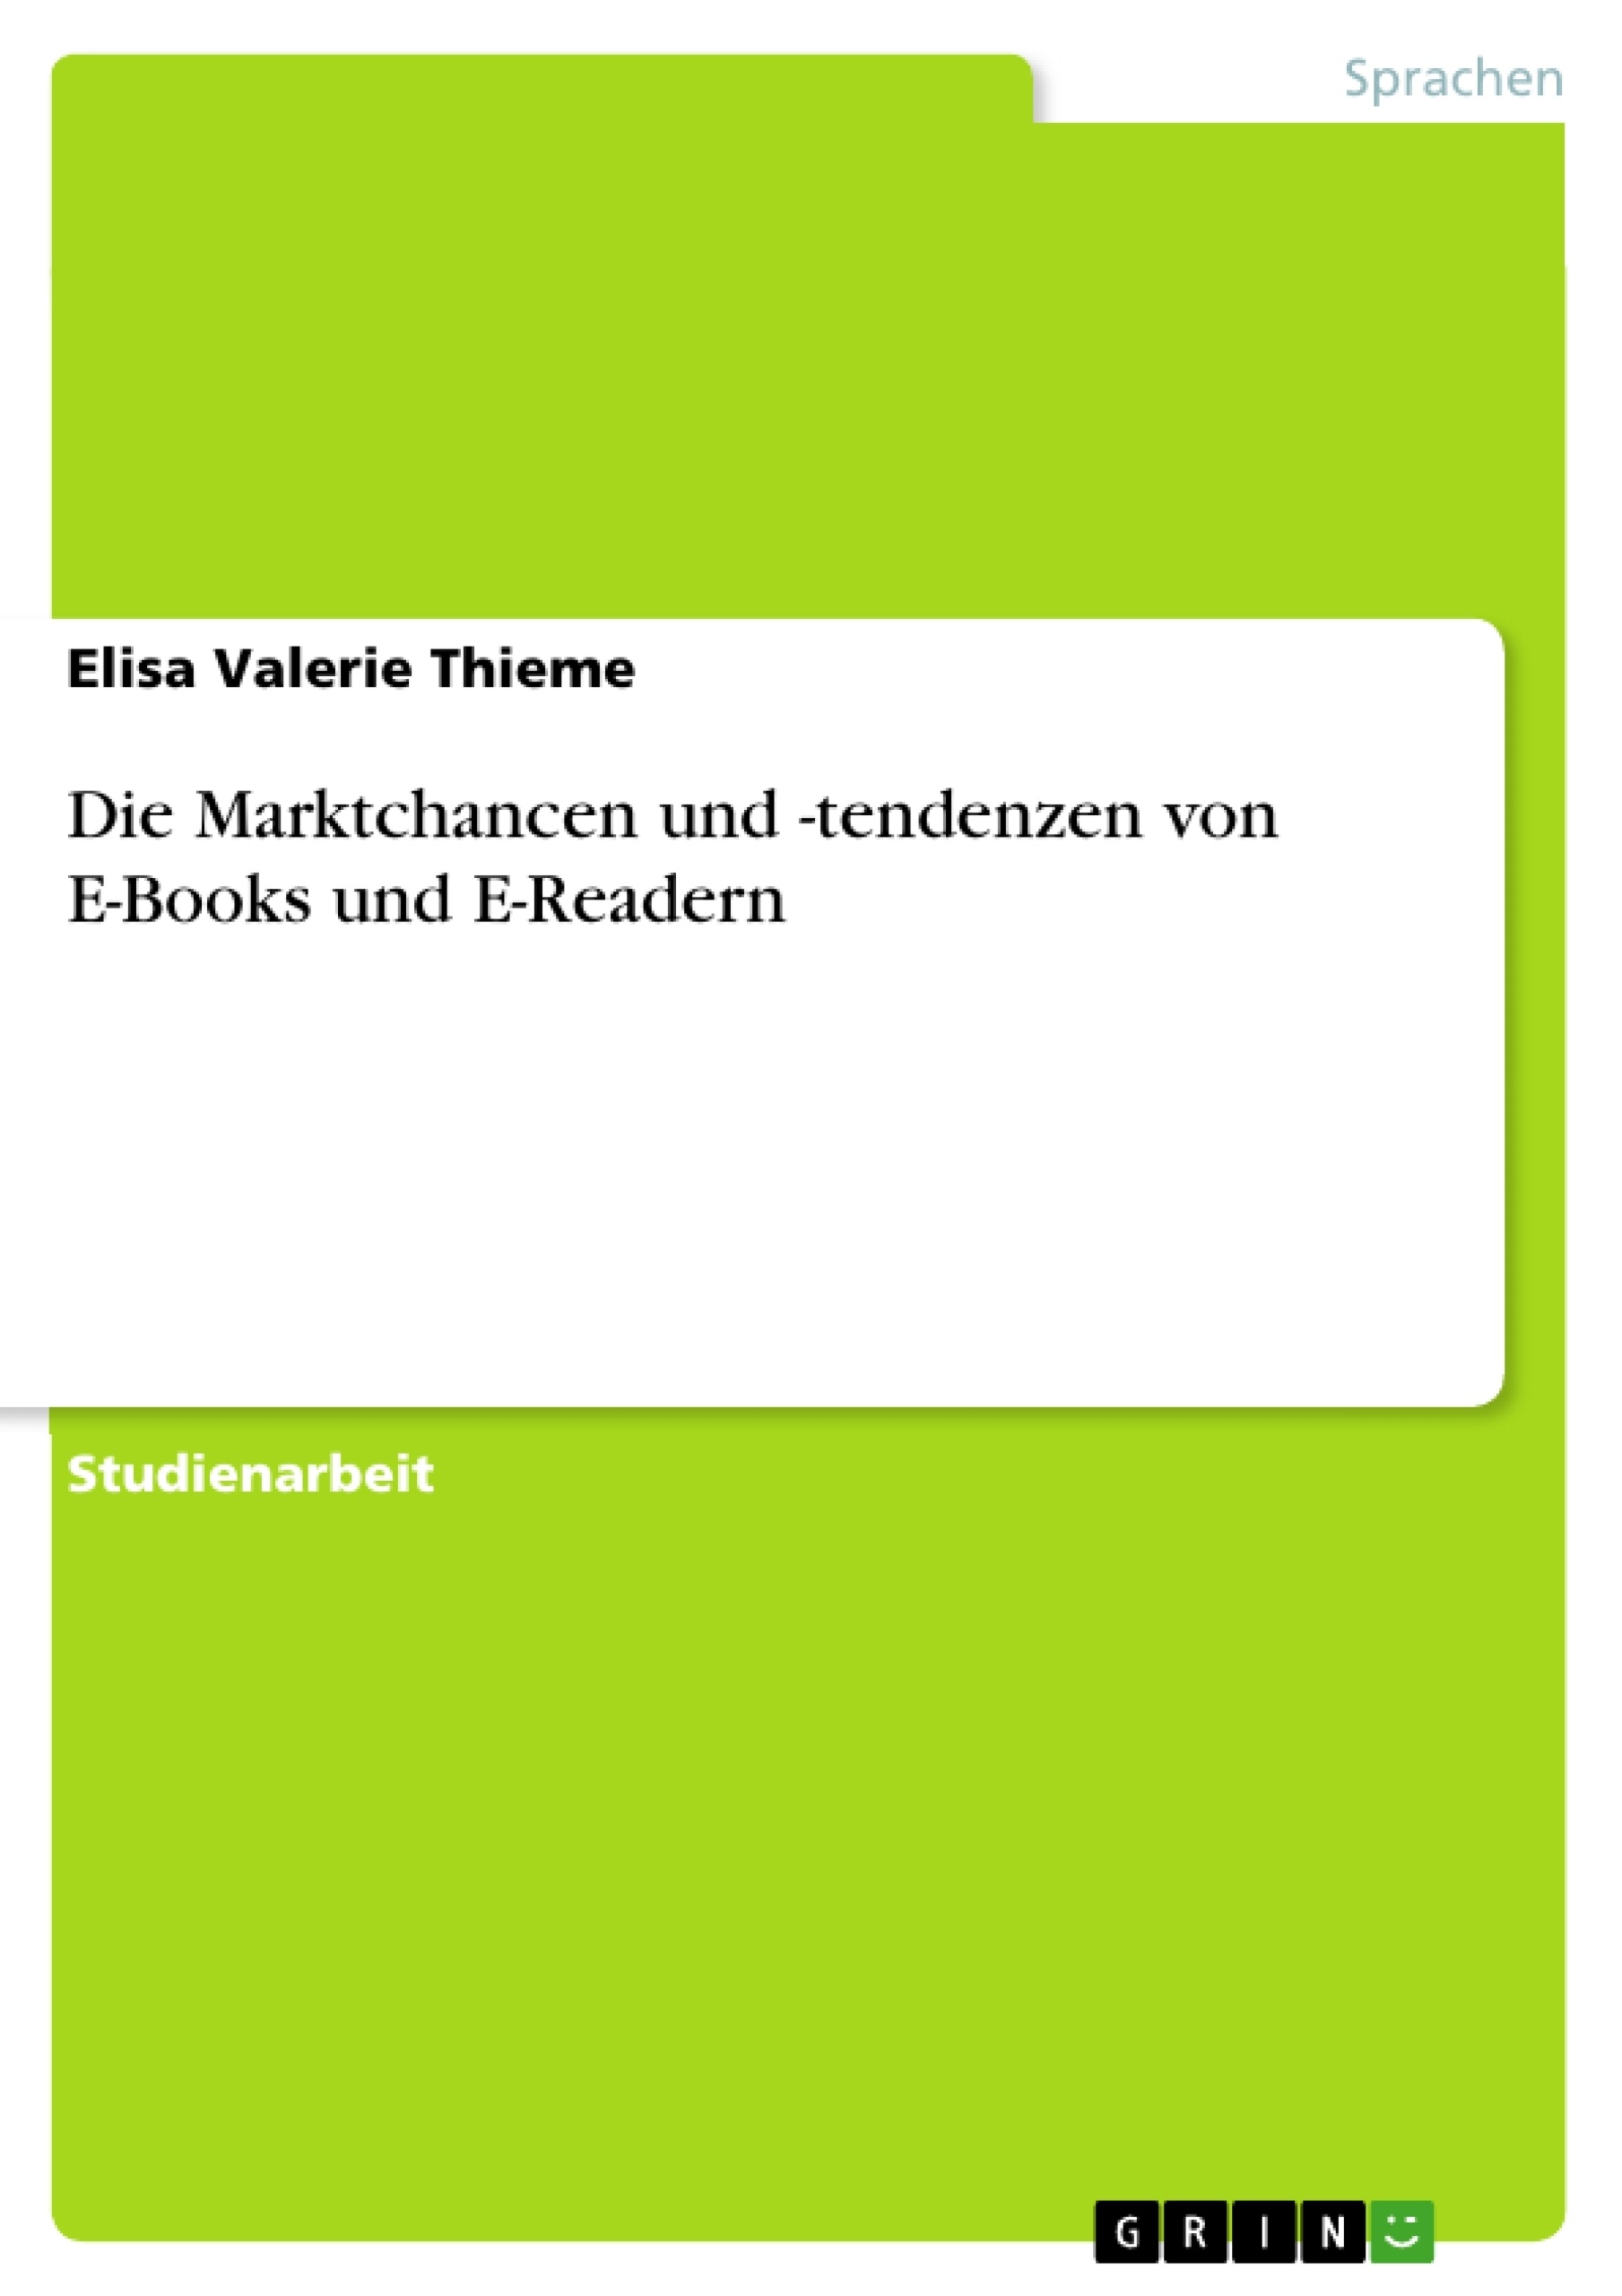 Title: Die Marktchancen und -tendenzen von E-Books und E-Readern